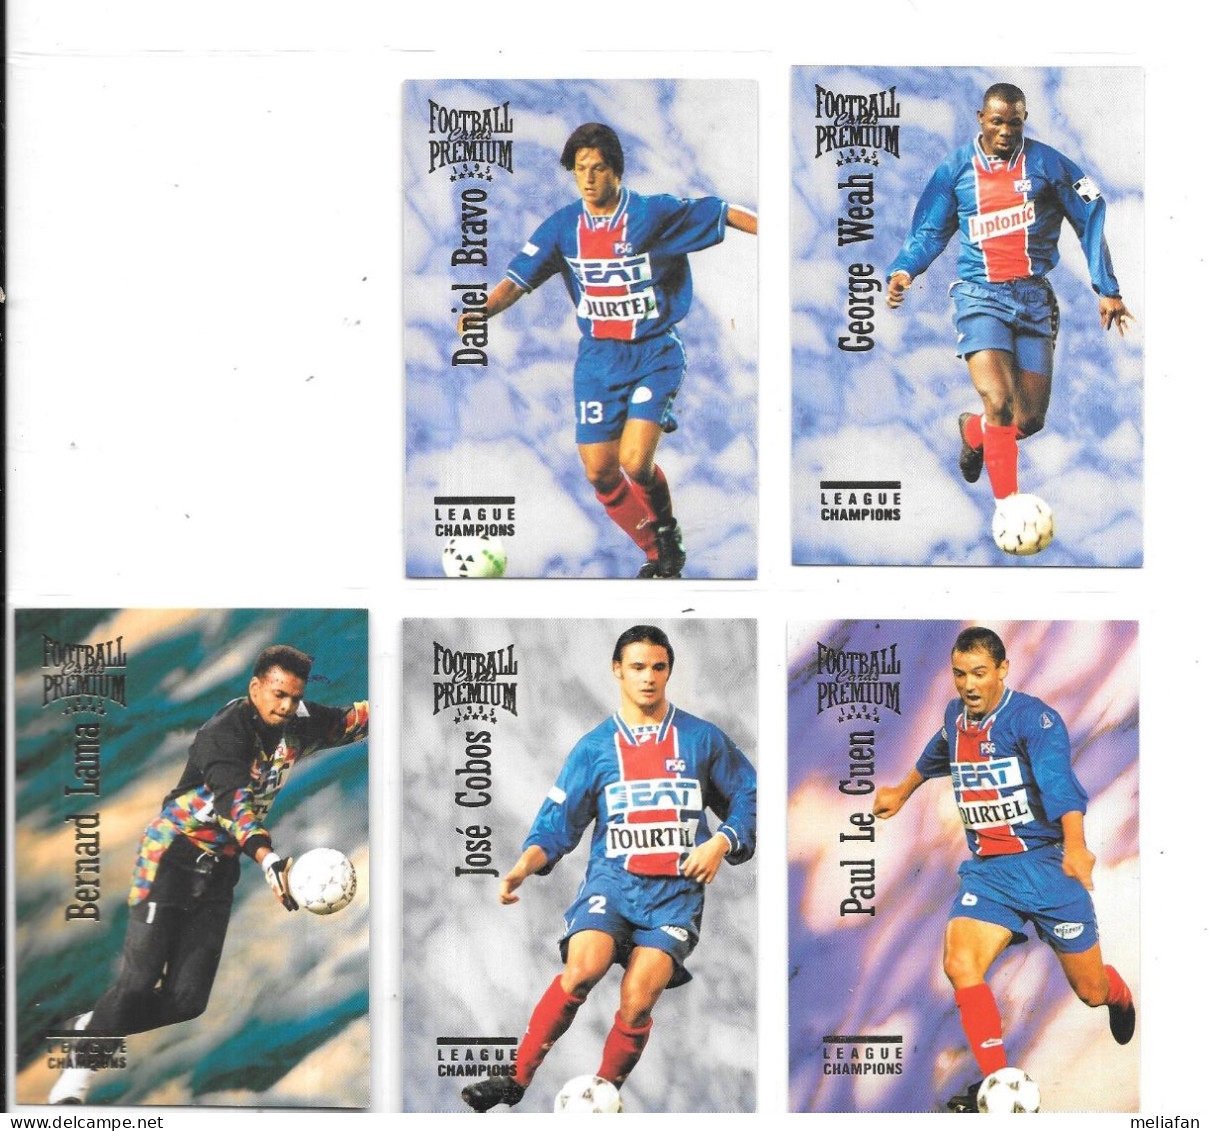 DX02 - CARTES PANINI FOOTBALL PREMIUM 1995 - PSG - GEORGE WEAH - BERNARD LAMA - PAUL LE GUEN - JOE COBOS - DANIEL BRAVO - Trading Cards